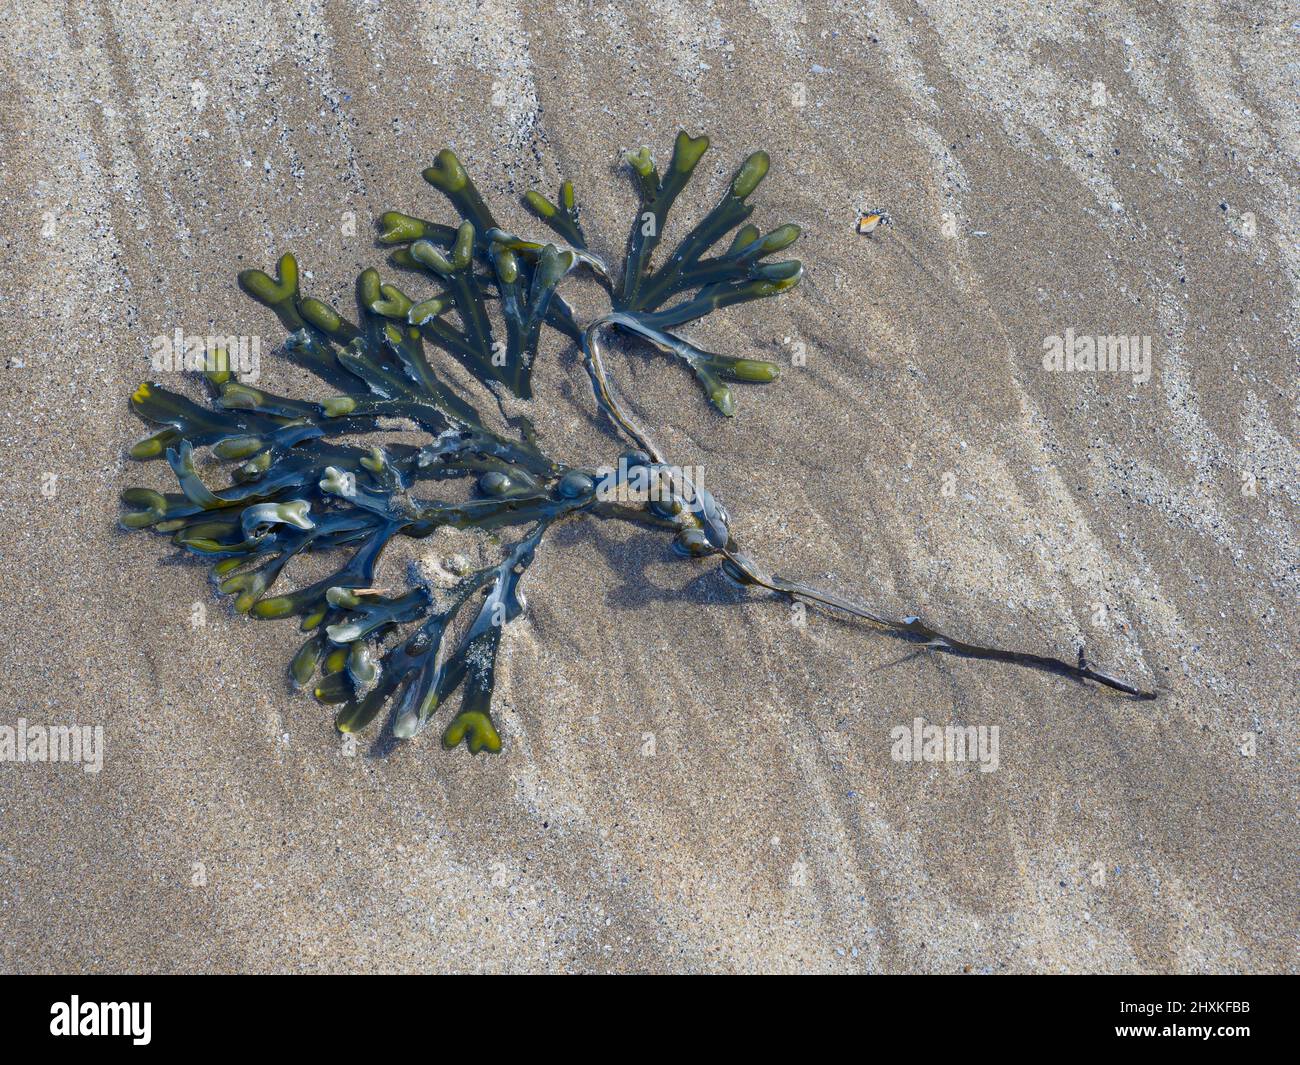 Spiralträger (Fucus spiralis), am Strand gewaschen, nach Westen Ho!, Devon, Großbritannien Stockfoto